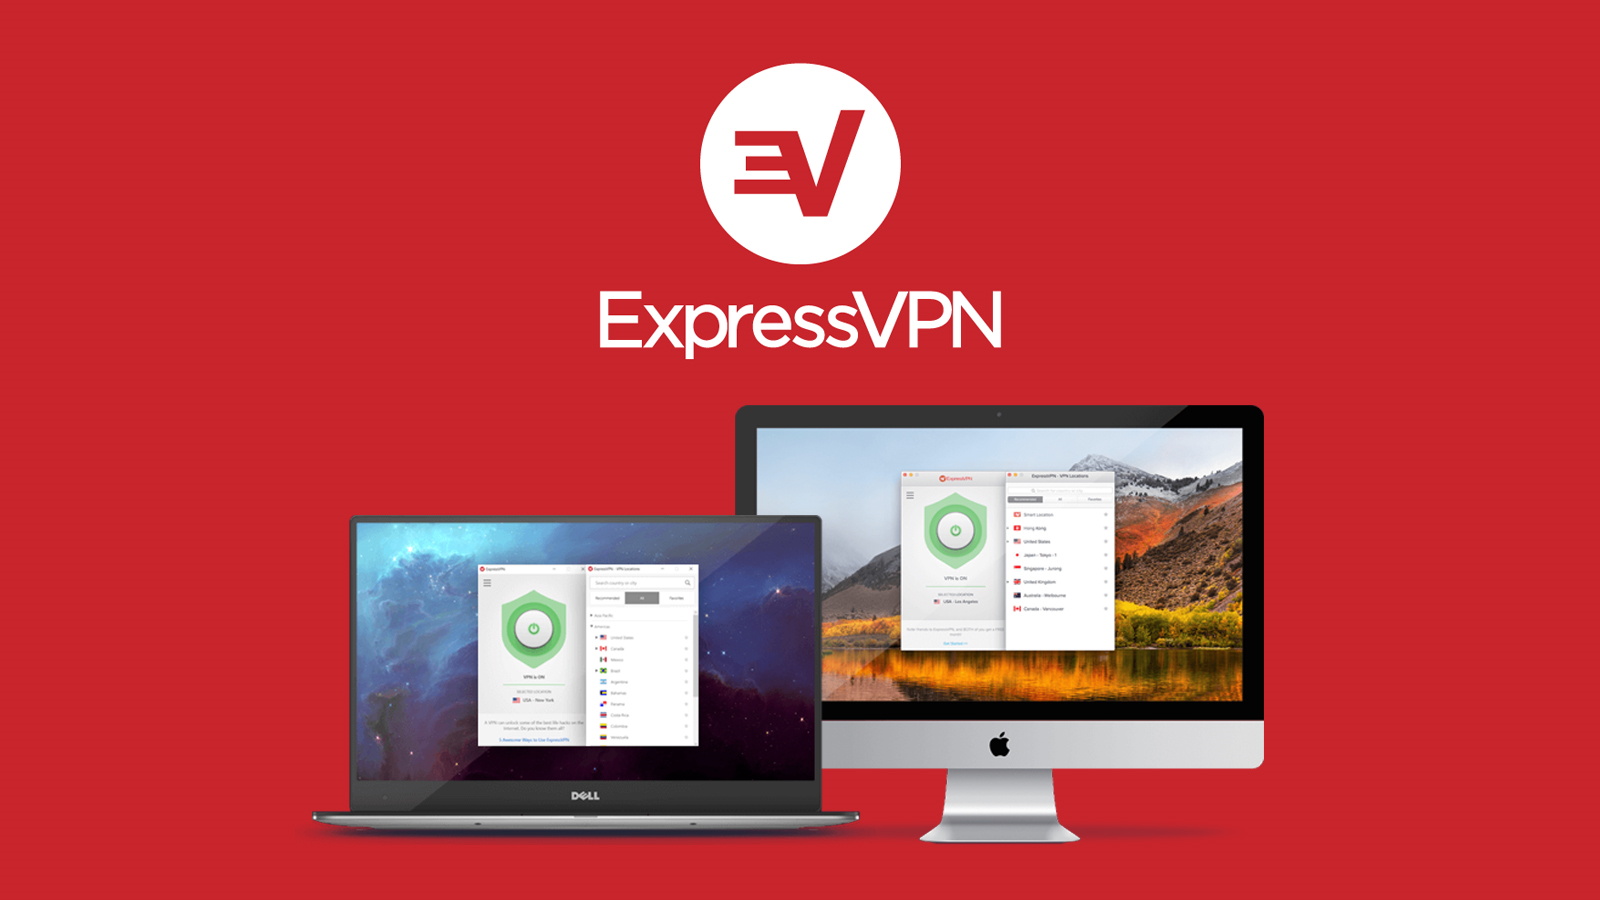 express vpn download free crack